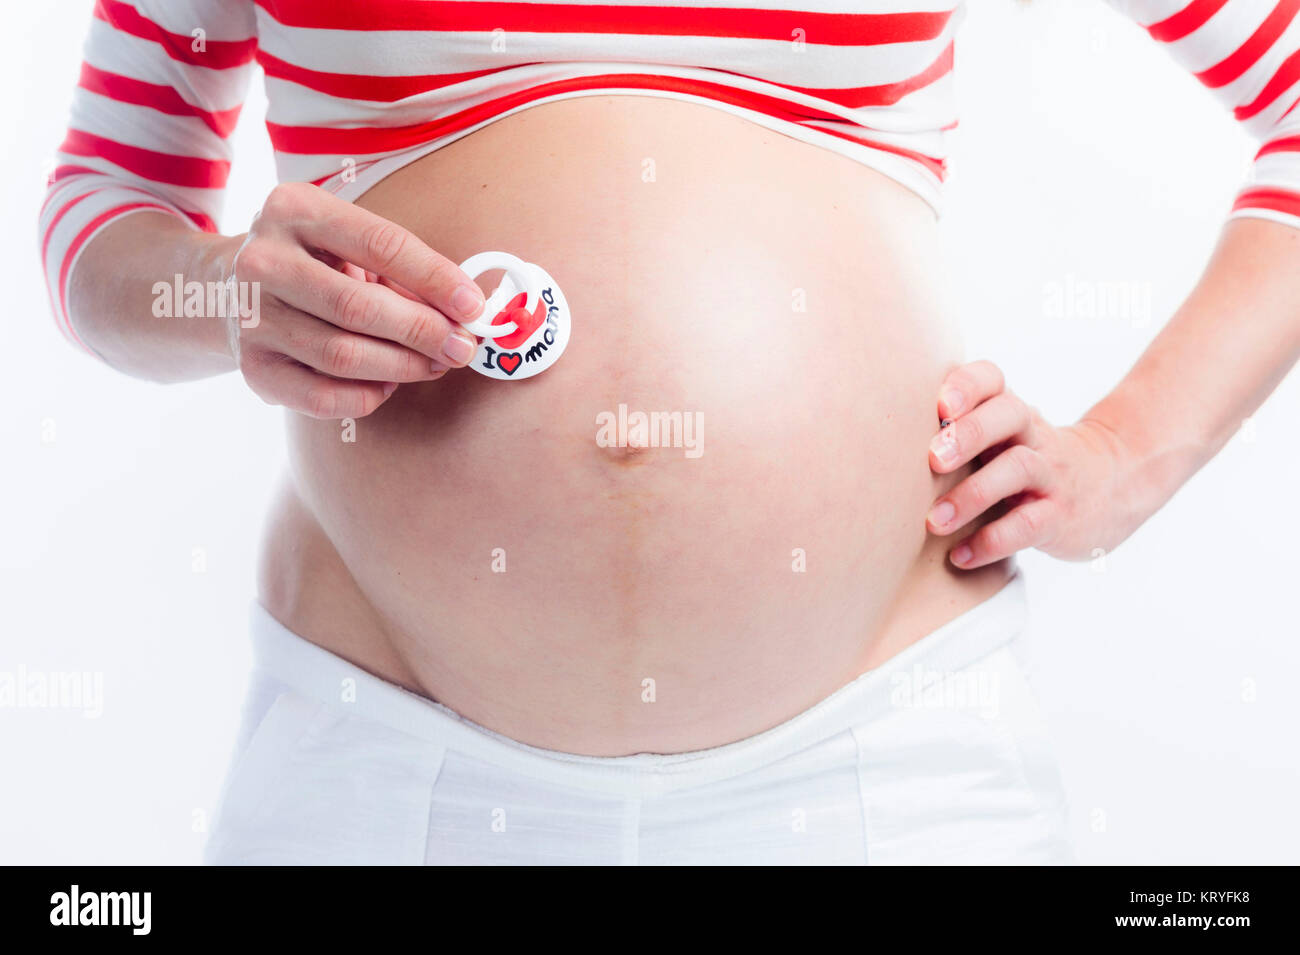 Schwangere Frau mit Schnuller am Babybauch - donna incinta con fantoccio Foto Stock